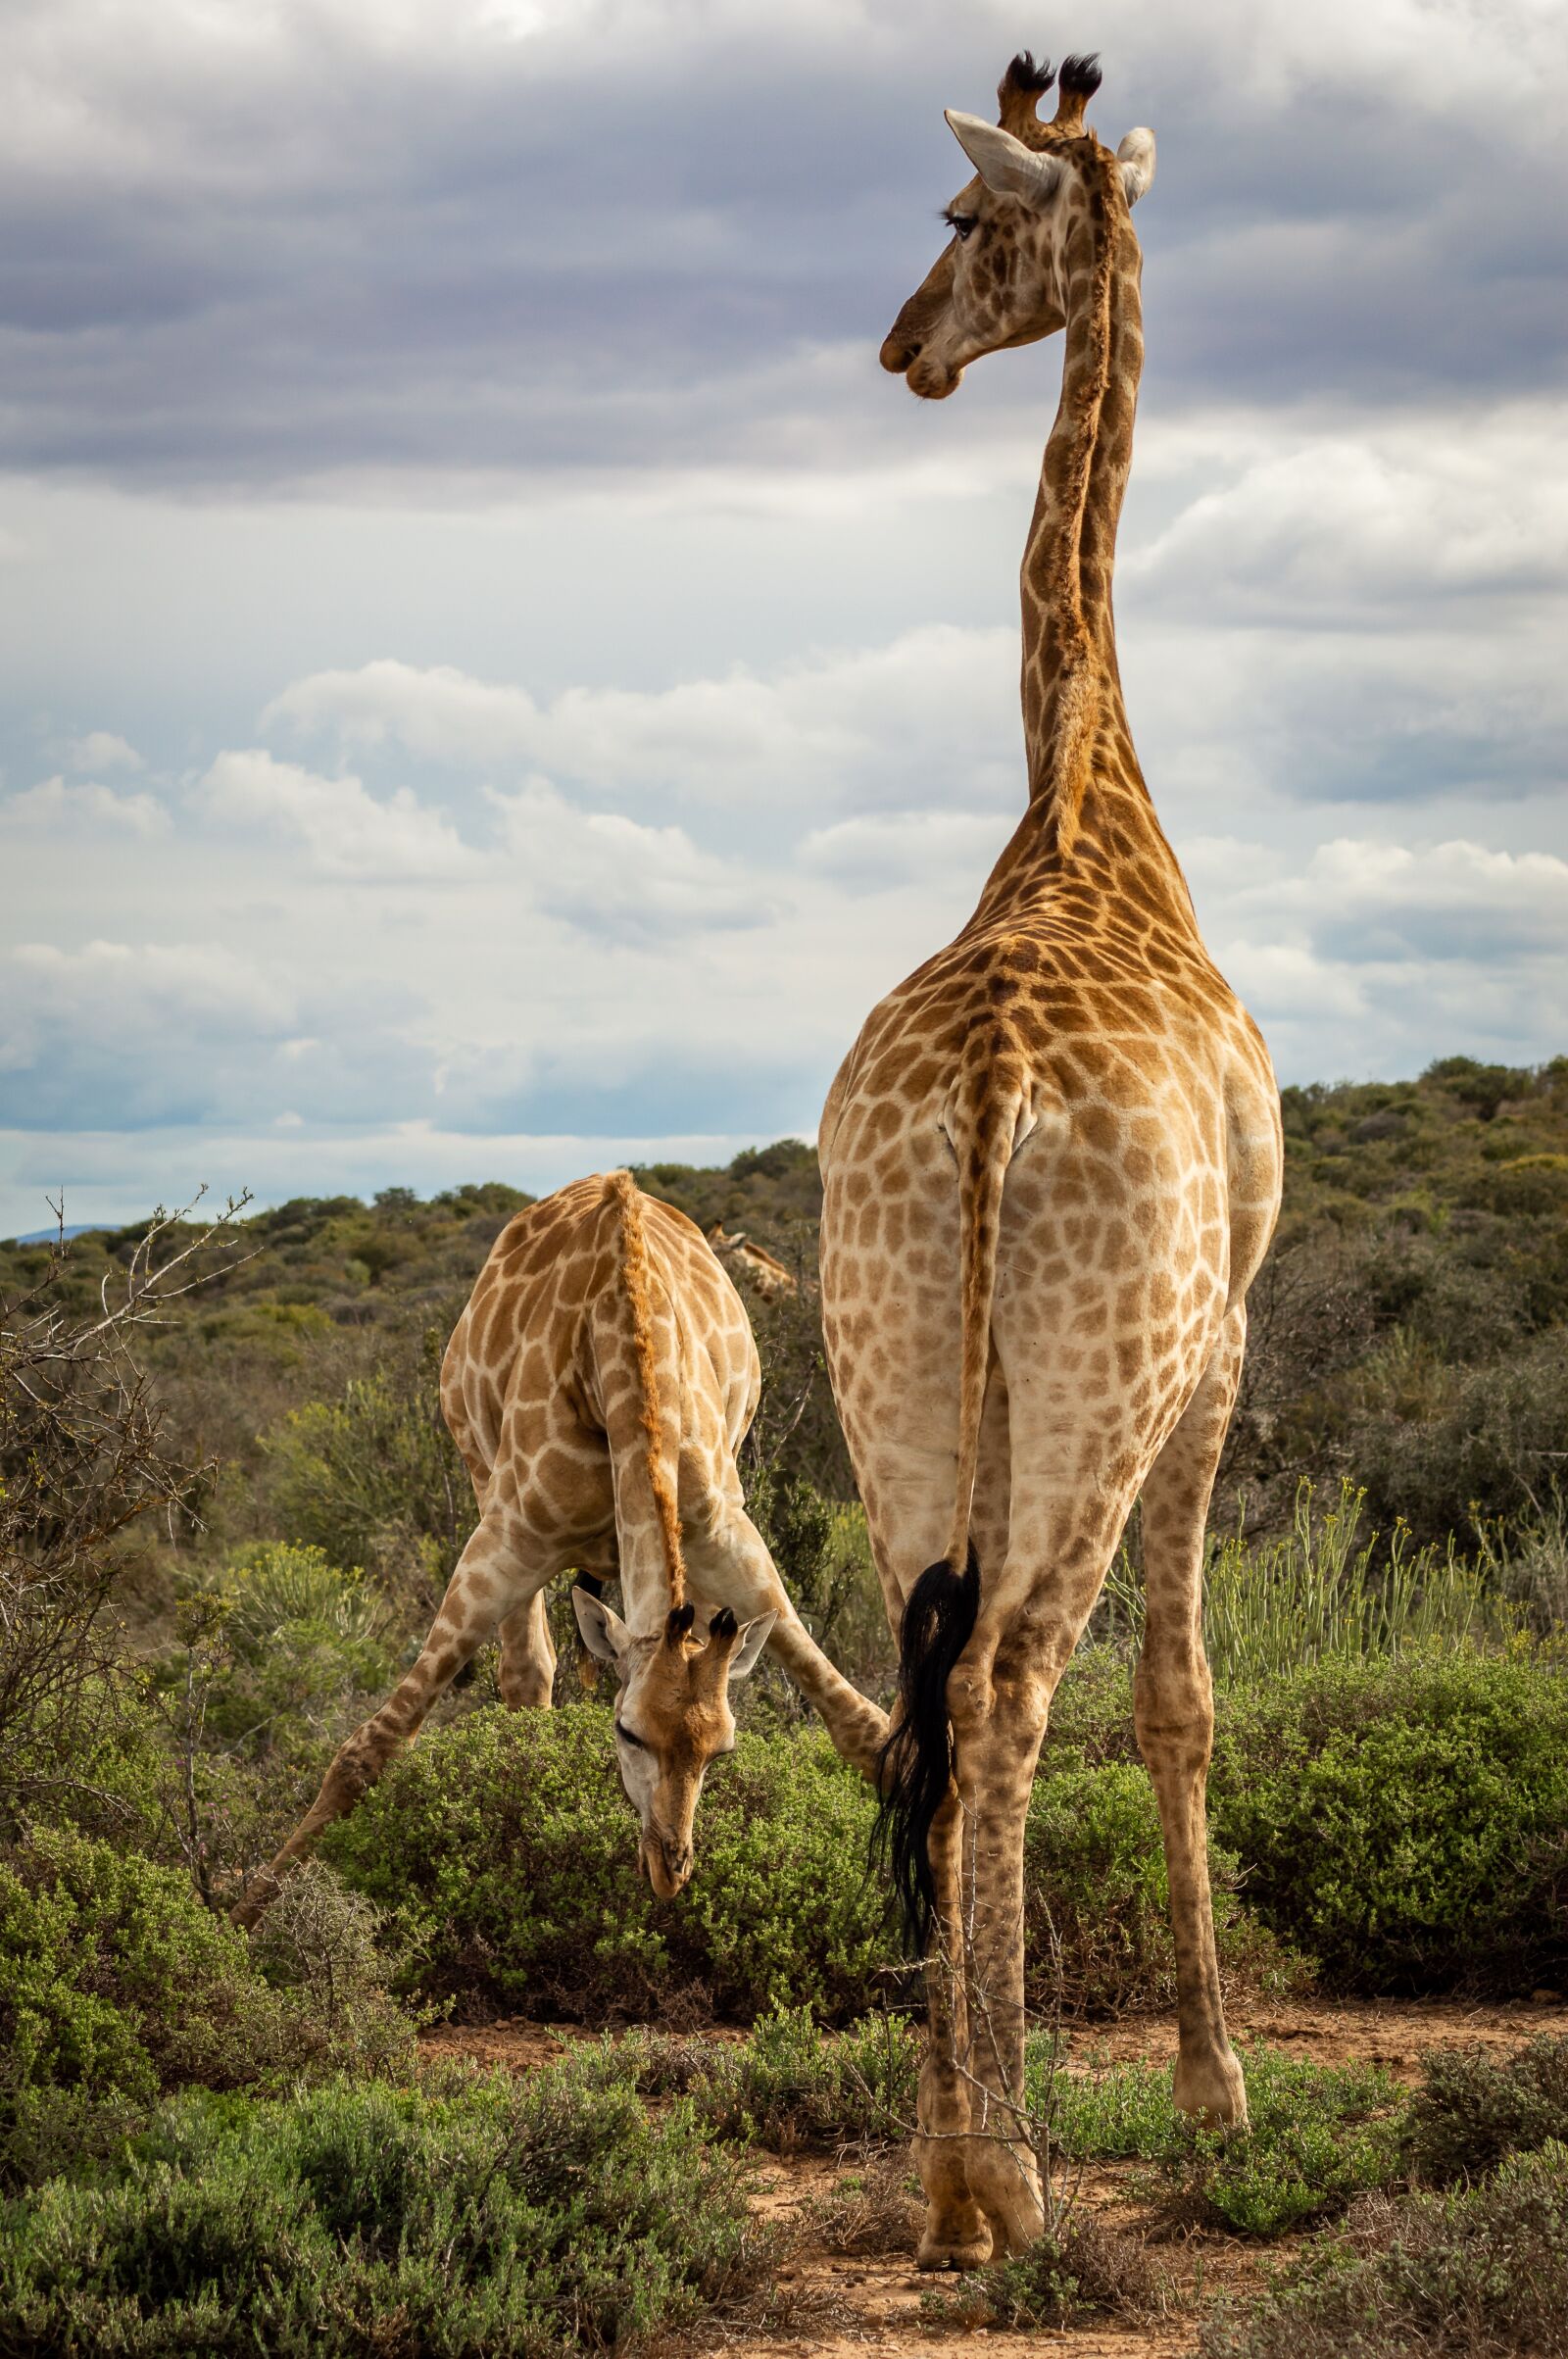 Nikon D3200 sample photo. Giraffe, safari, africa photography